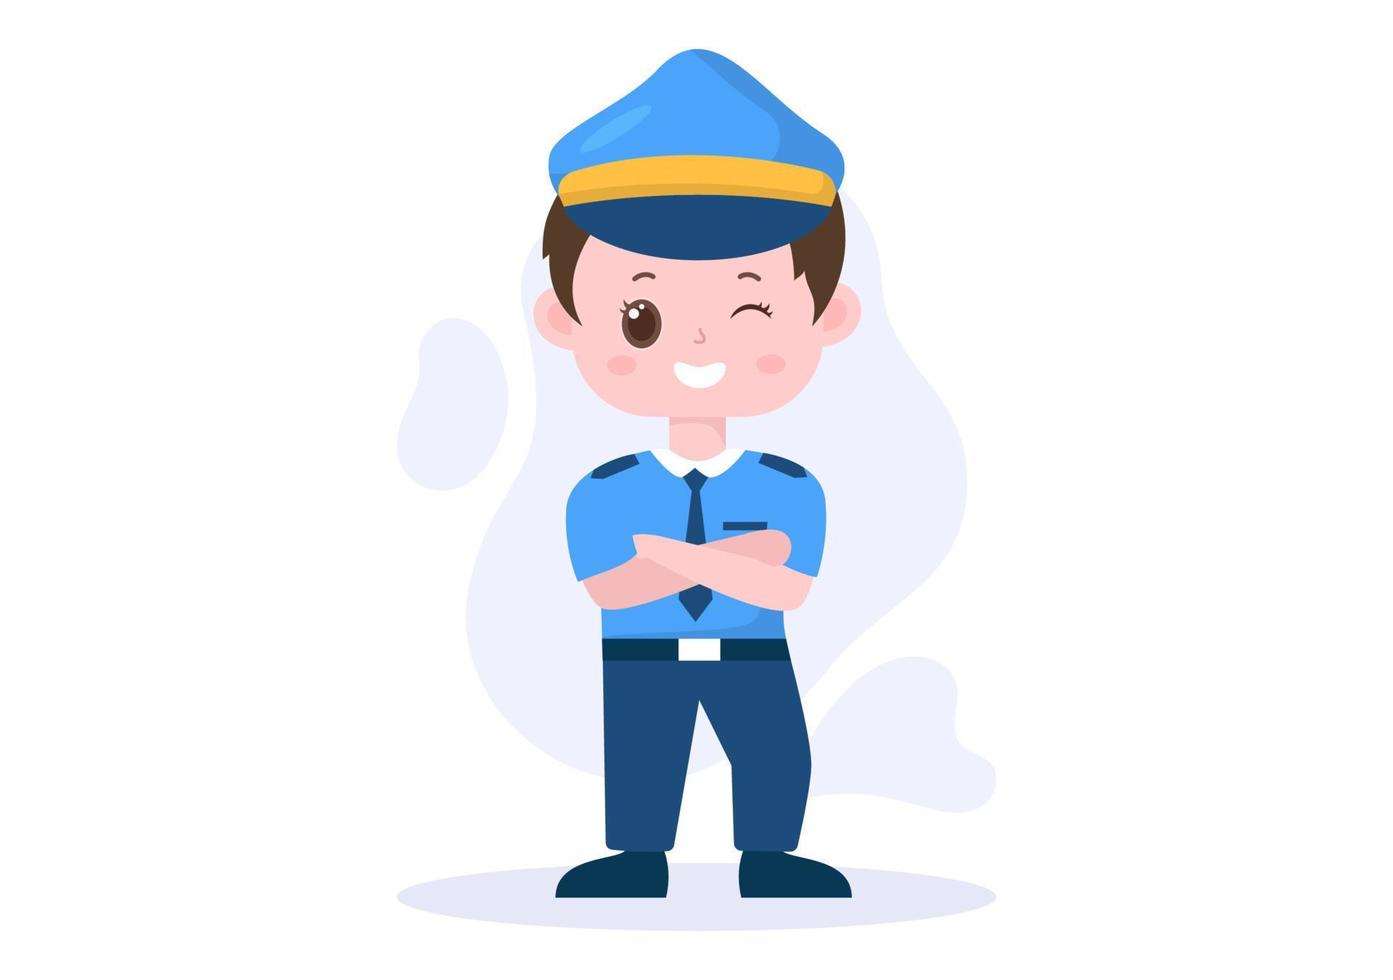 ilustração vetorial de personagem policial de crianças fofas usando uniforme com equipamento definido em estilo cartoon plana vetor